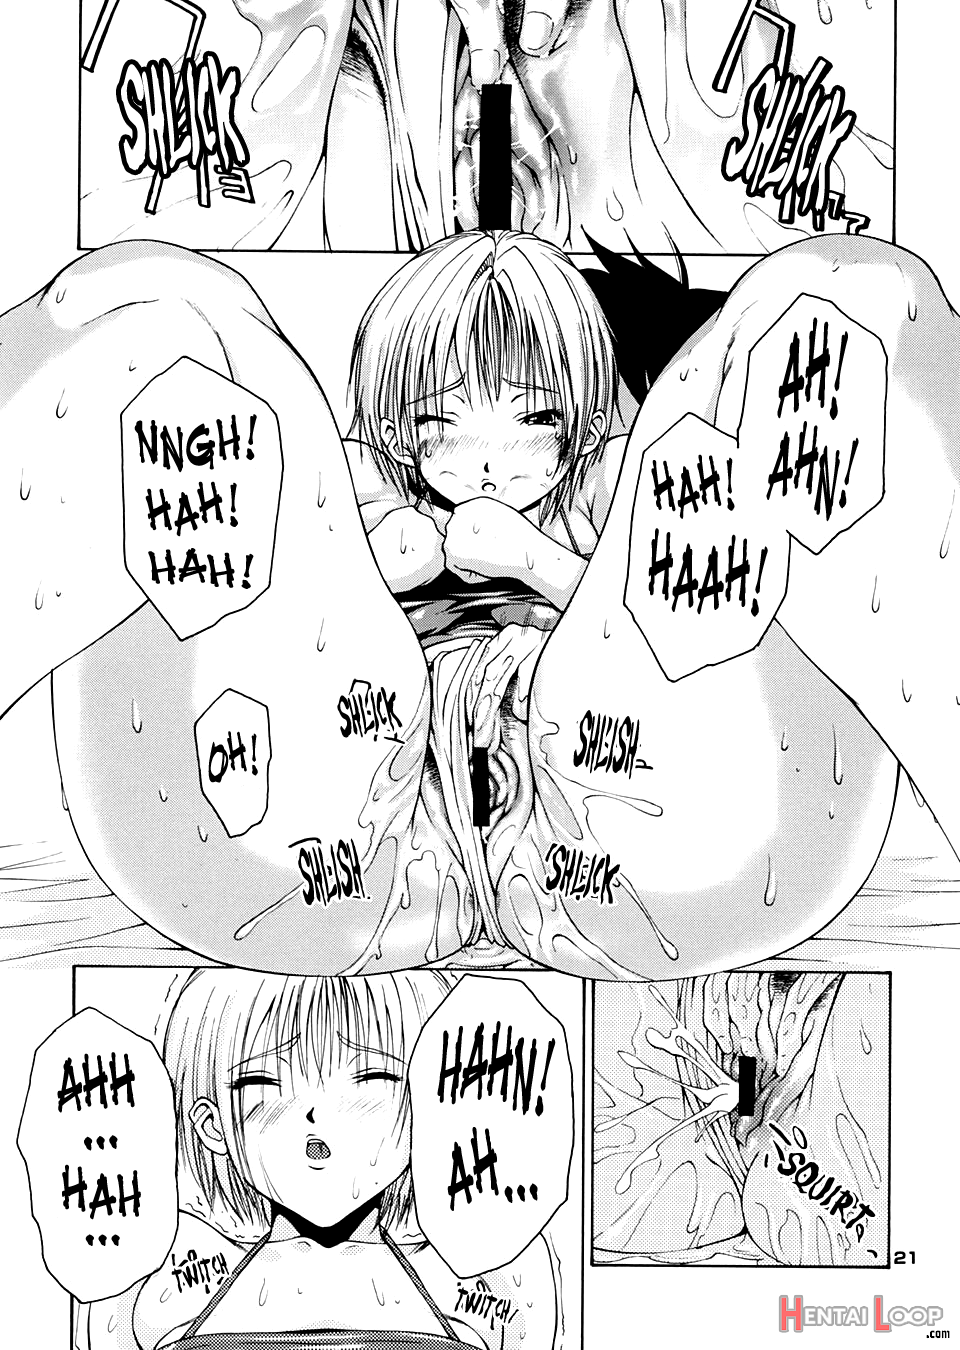 Haru Ichigo page 18